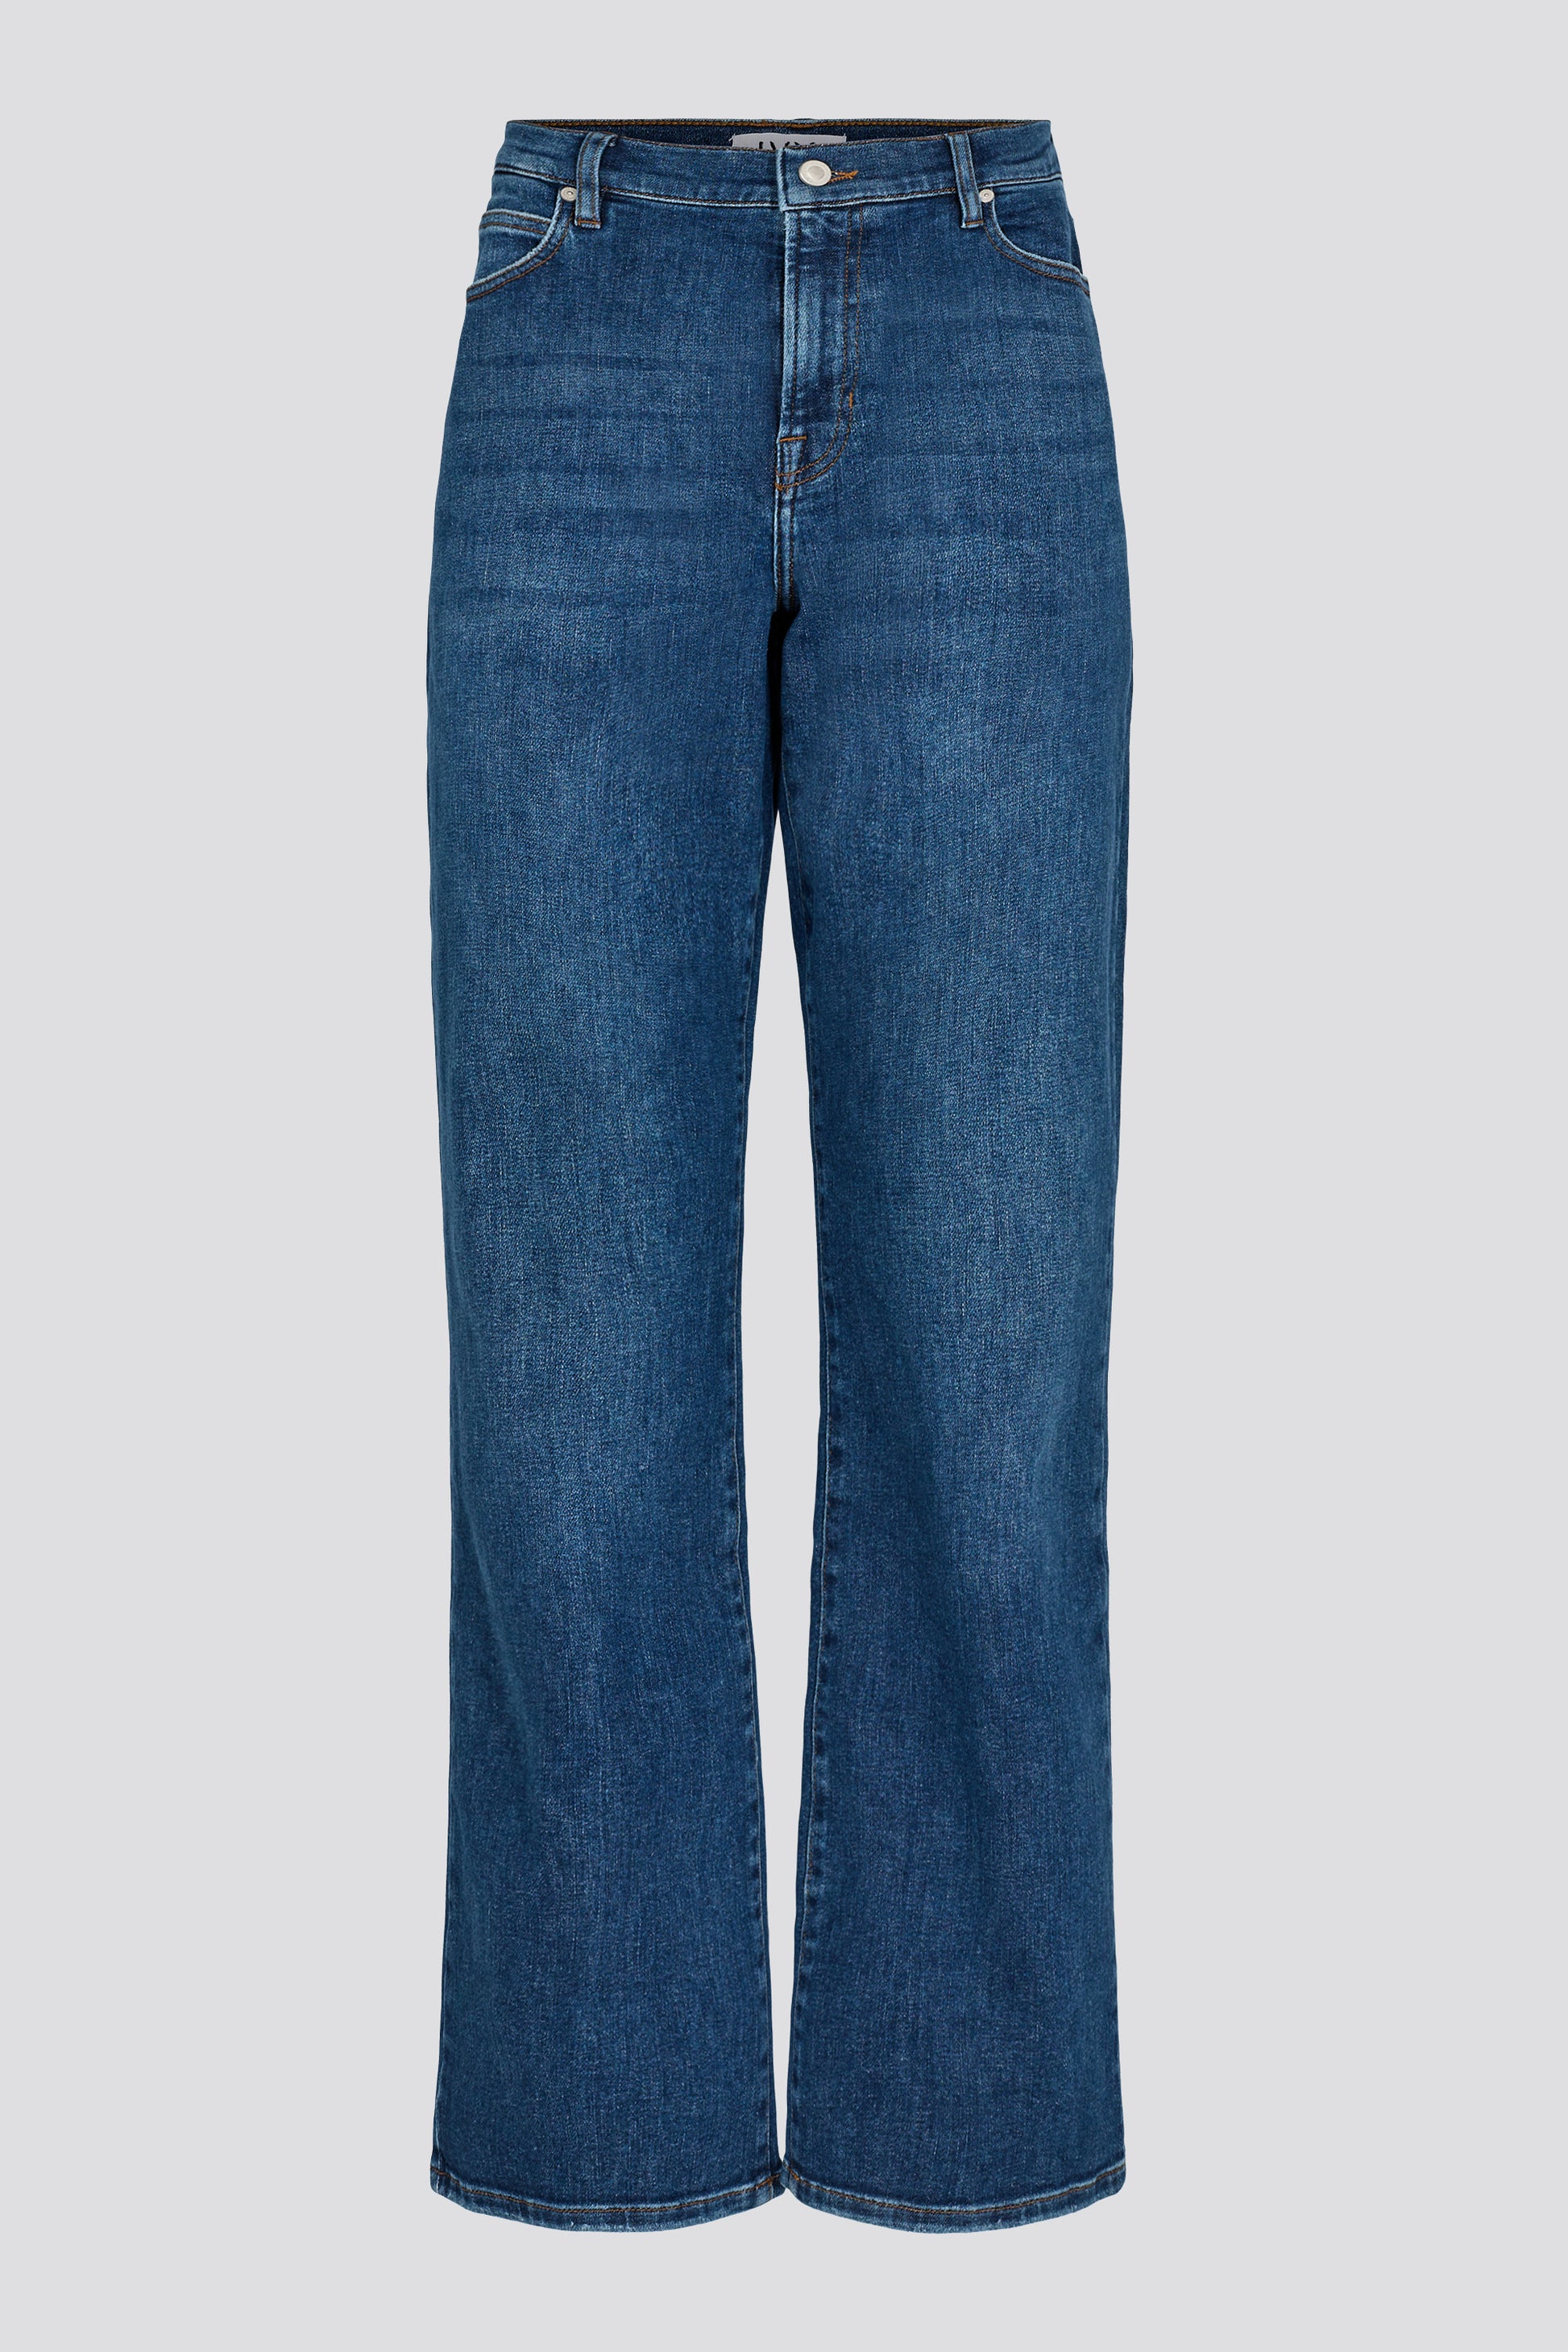 IVY Copenhagen IVY-Mia SWAN Jeans Wash Rover Power Blue Jeans & Pants 51 Denim Blue